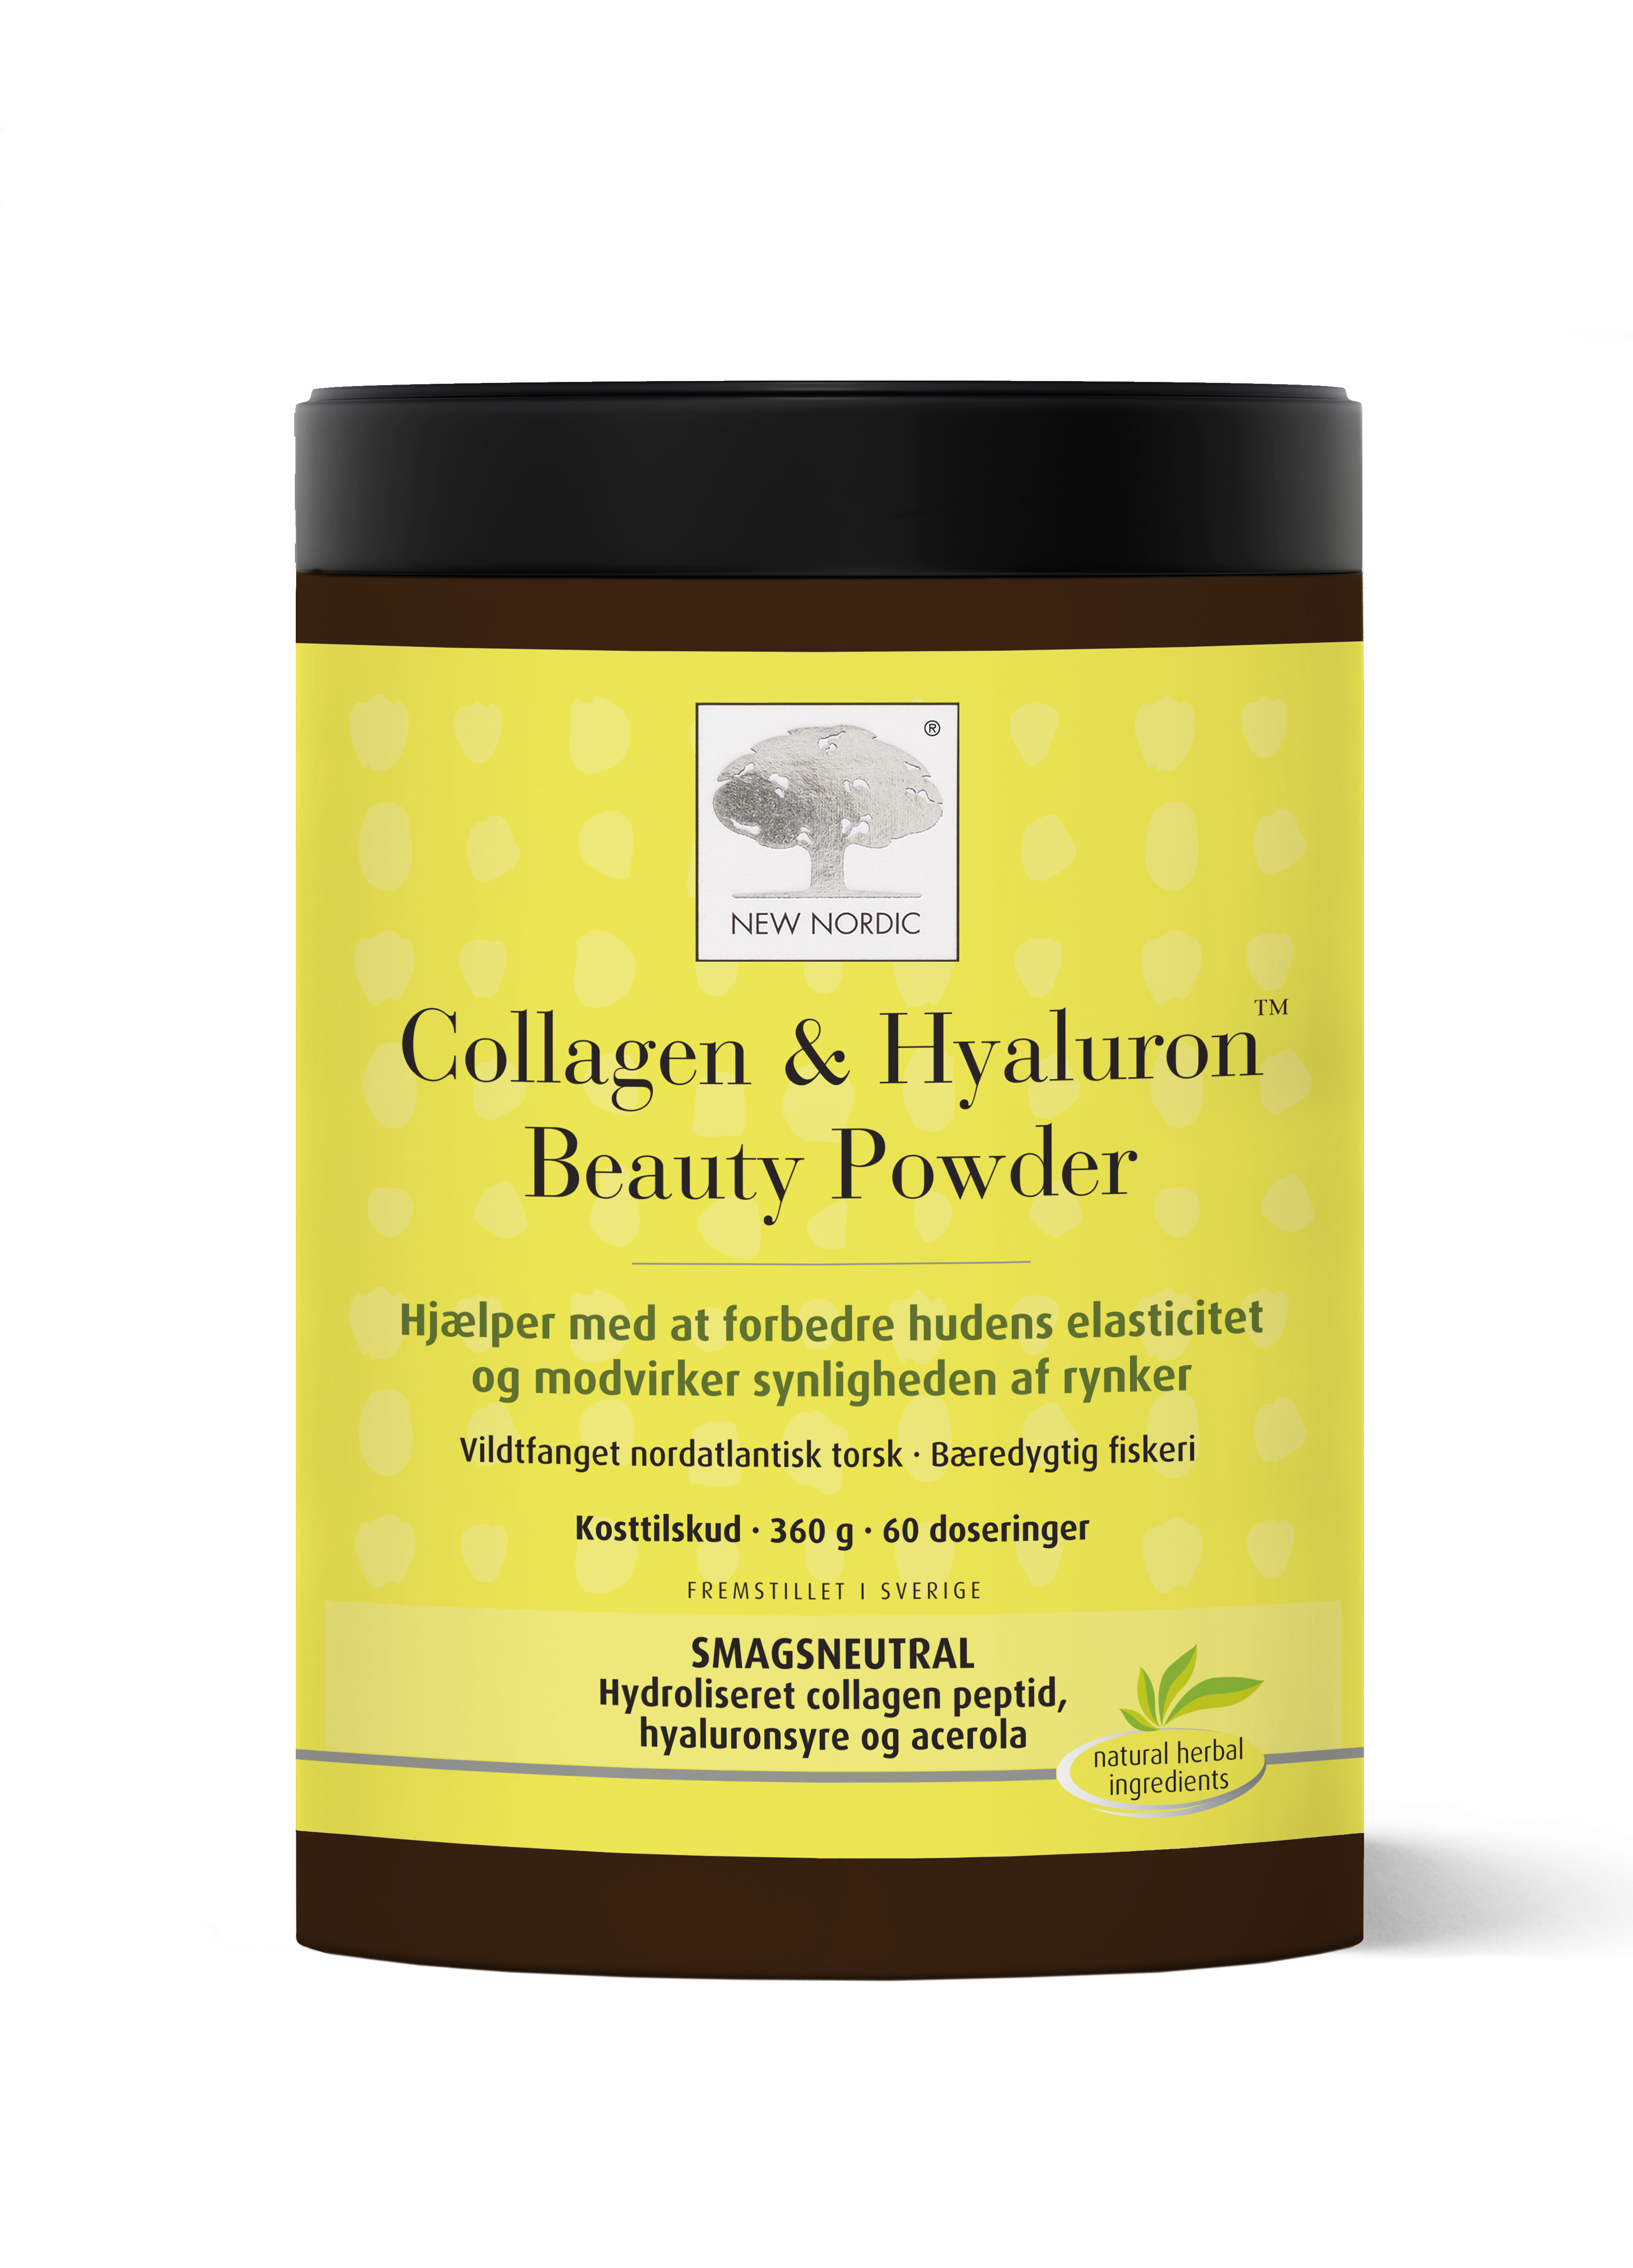 Billede af New Nordic Collagen & Hyaluron Beauty Powder 360g - 2 for 598,-